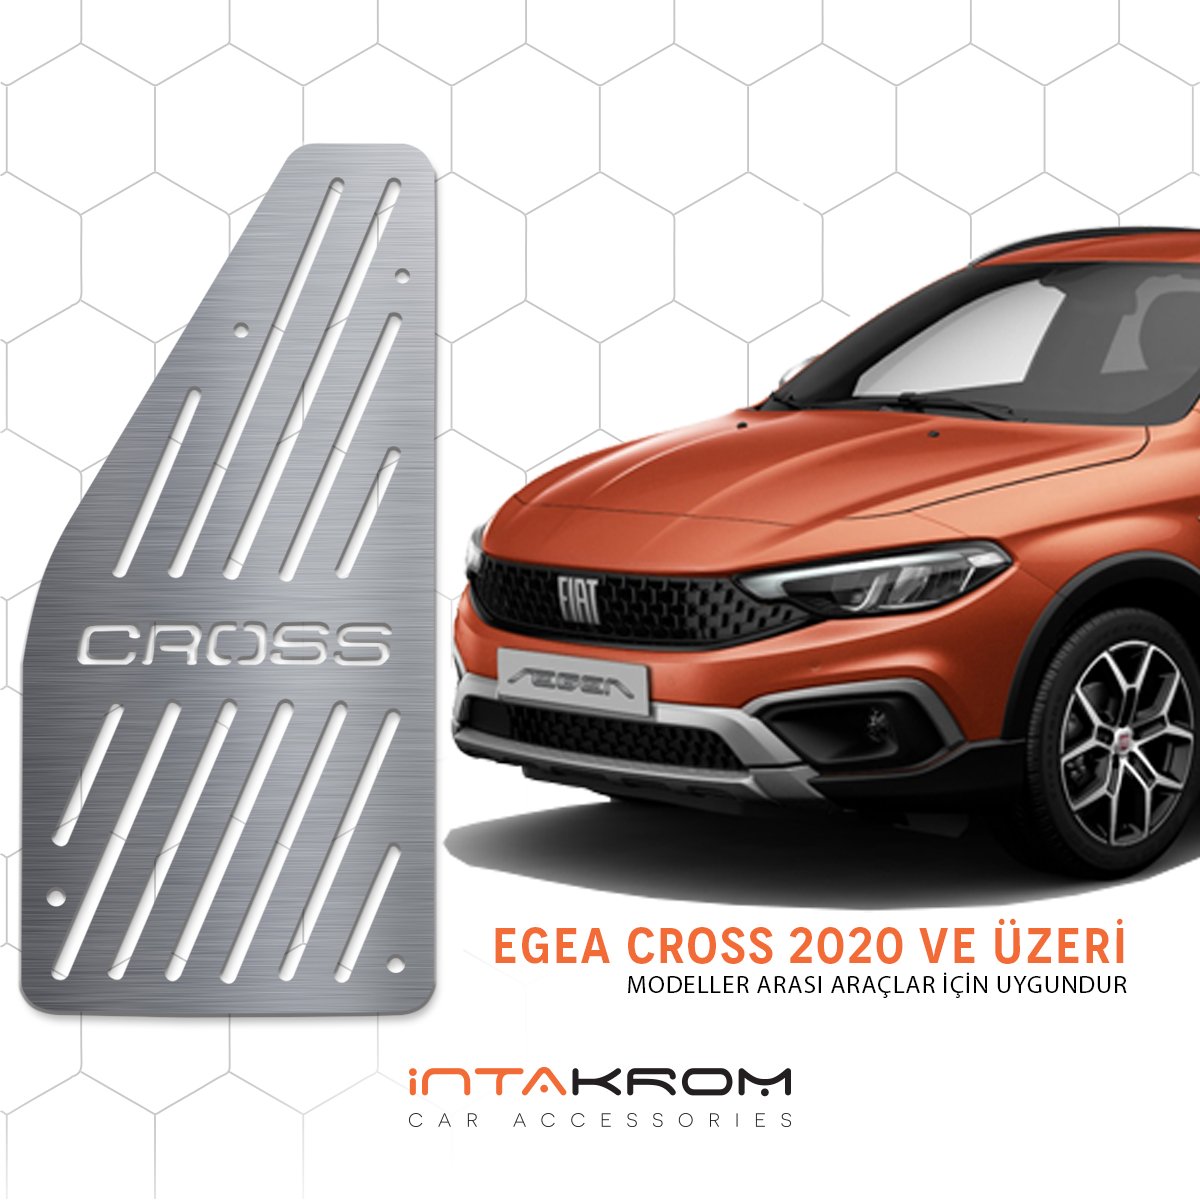 Fiat Egea Cross Krom Ayak Dinlendirme Pedalı - 2020 Ve Üzeri